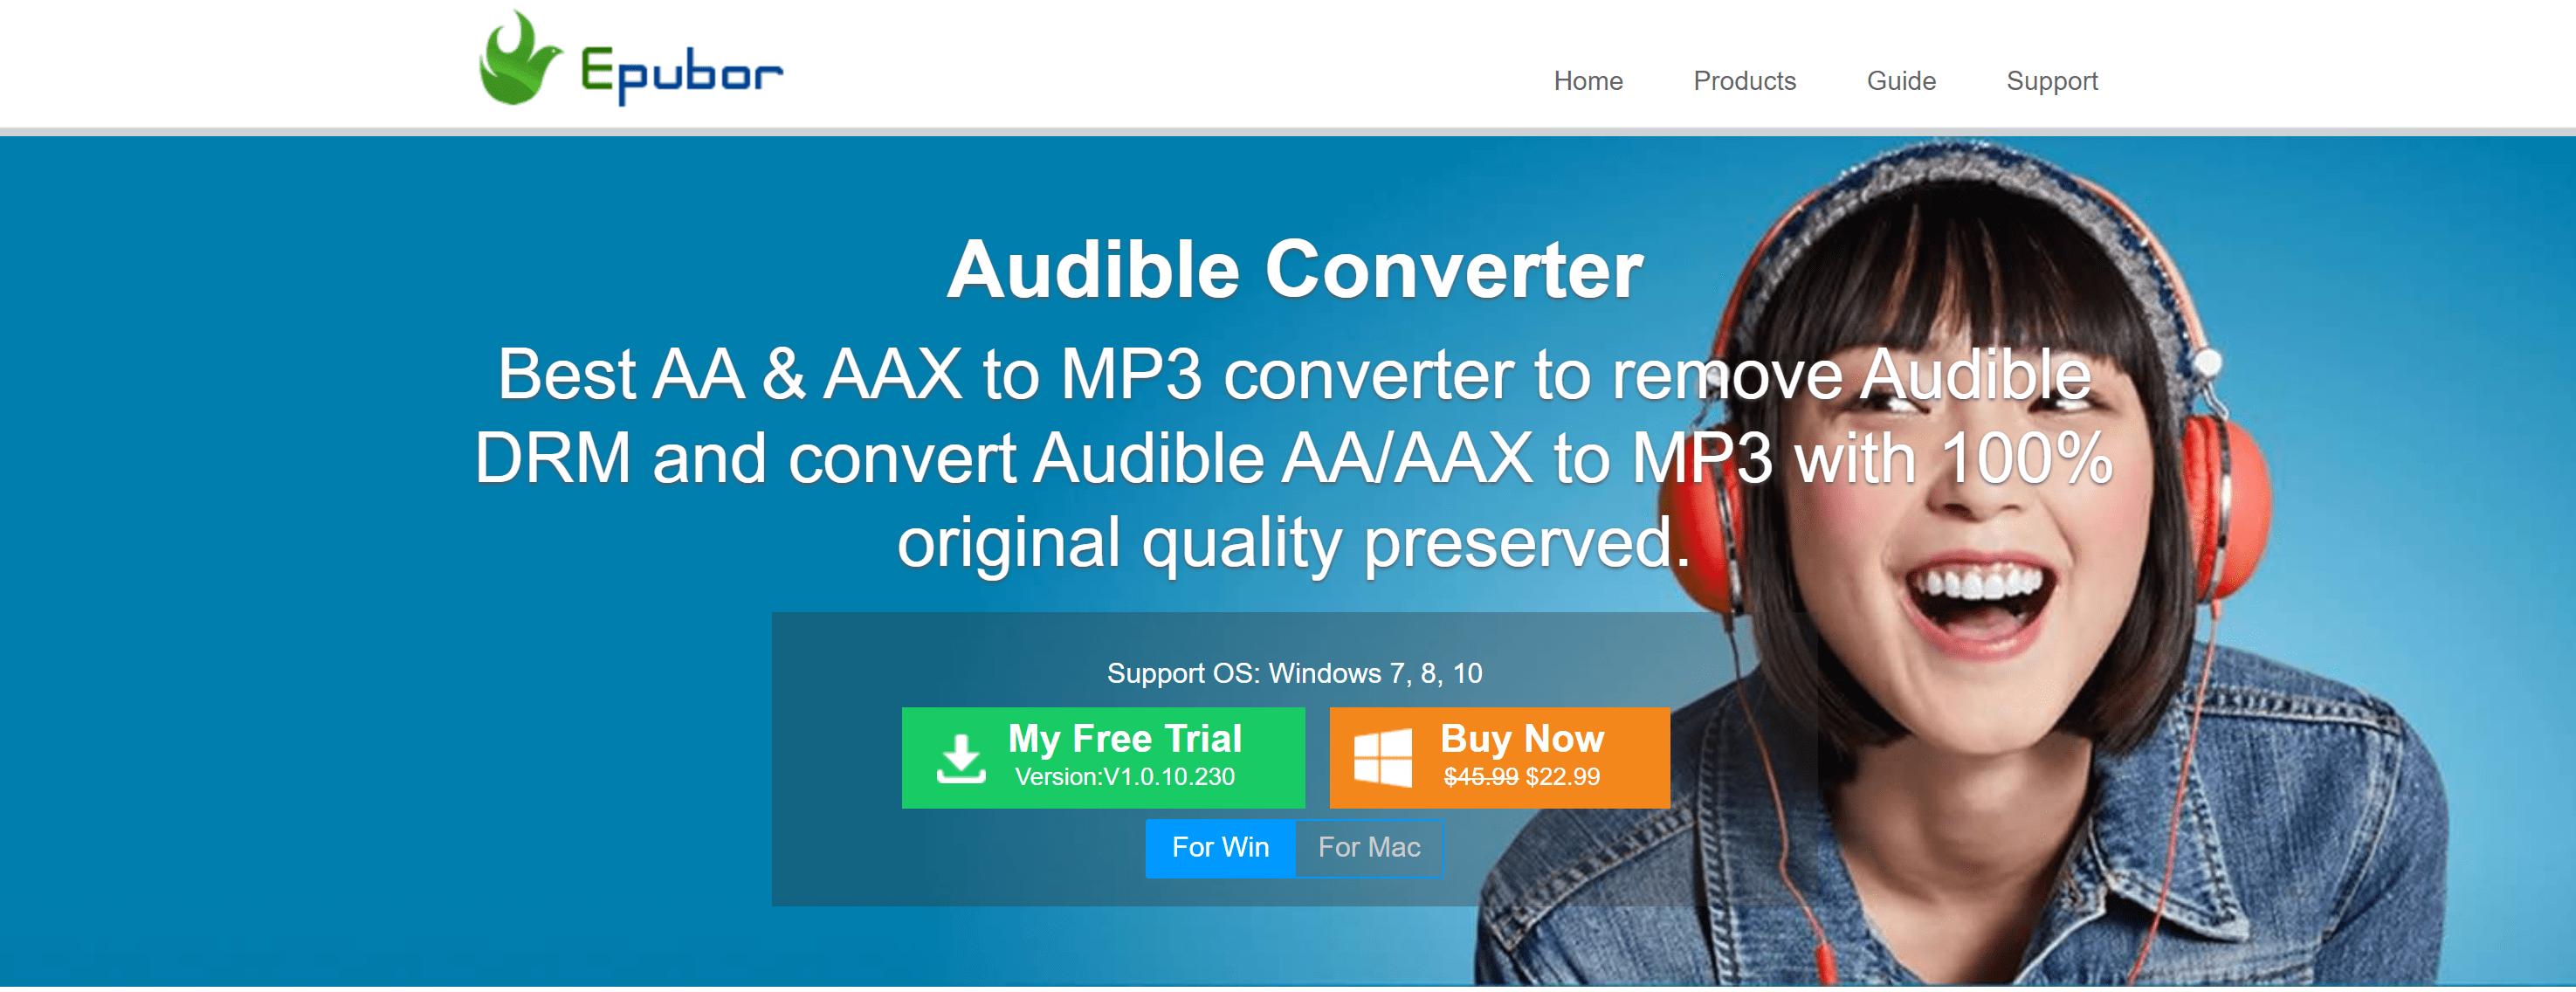 epubor audible converter full version